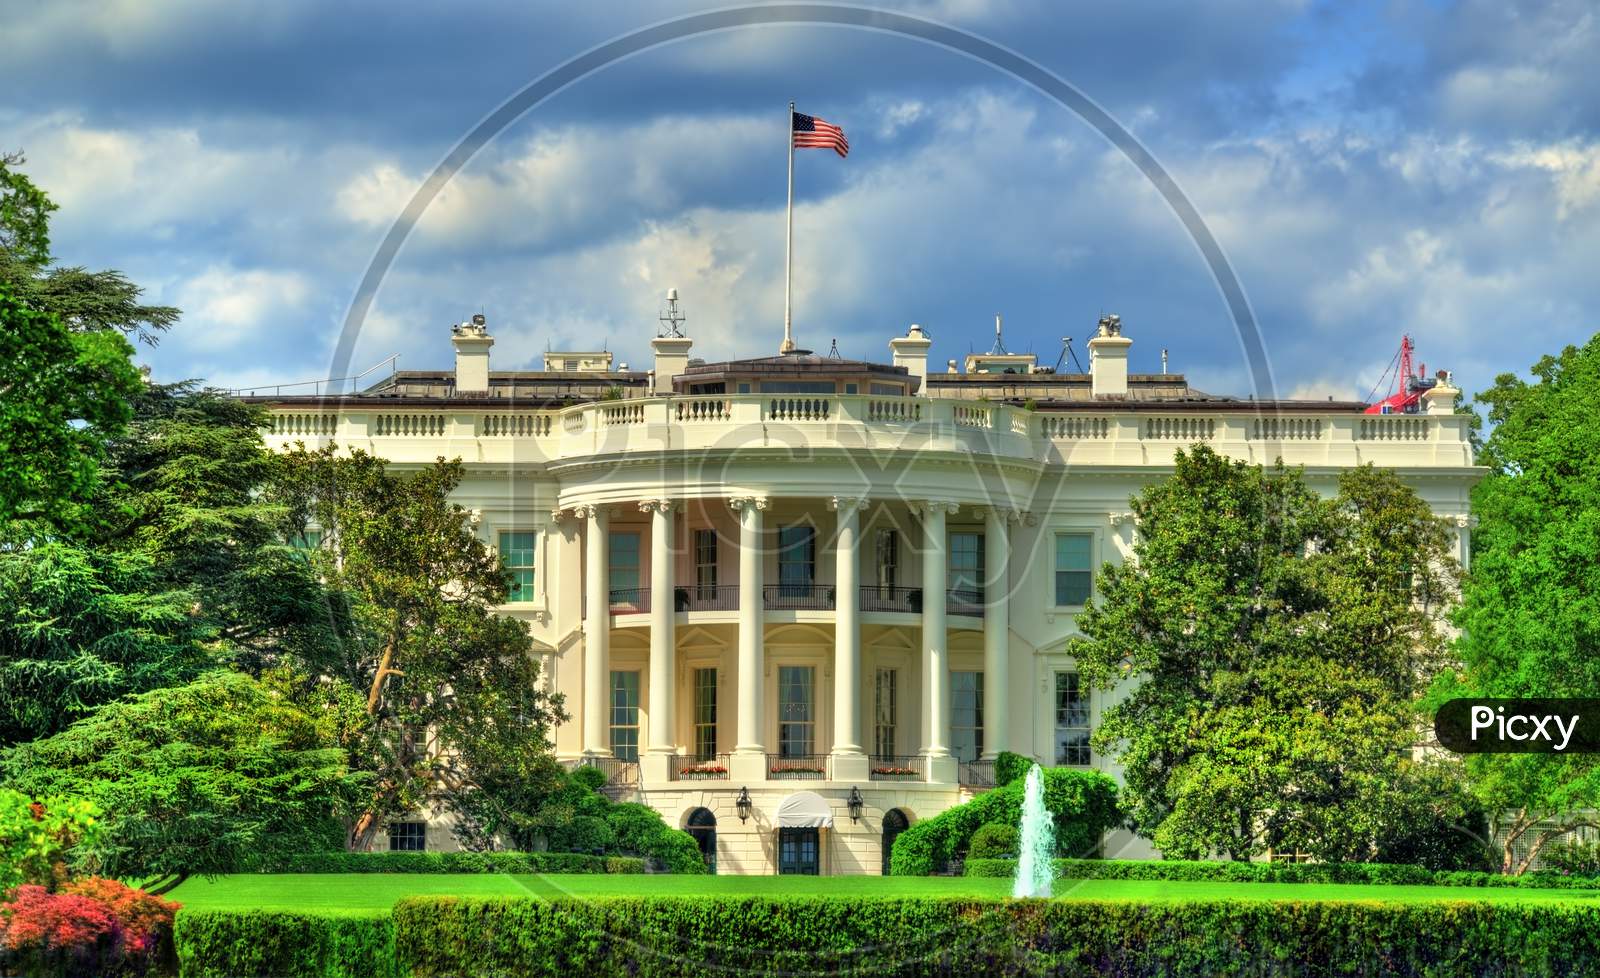 The White House In Washington, Dc